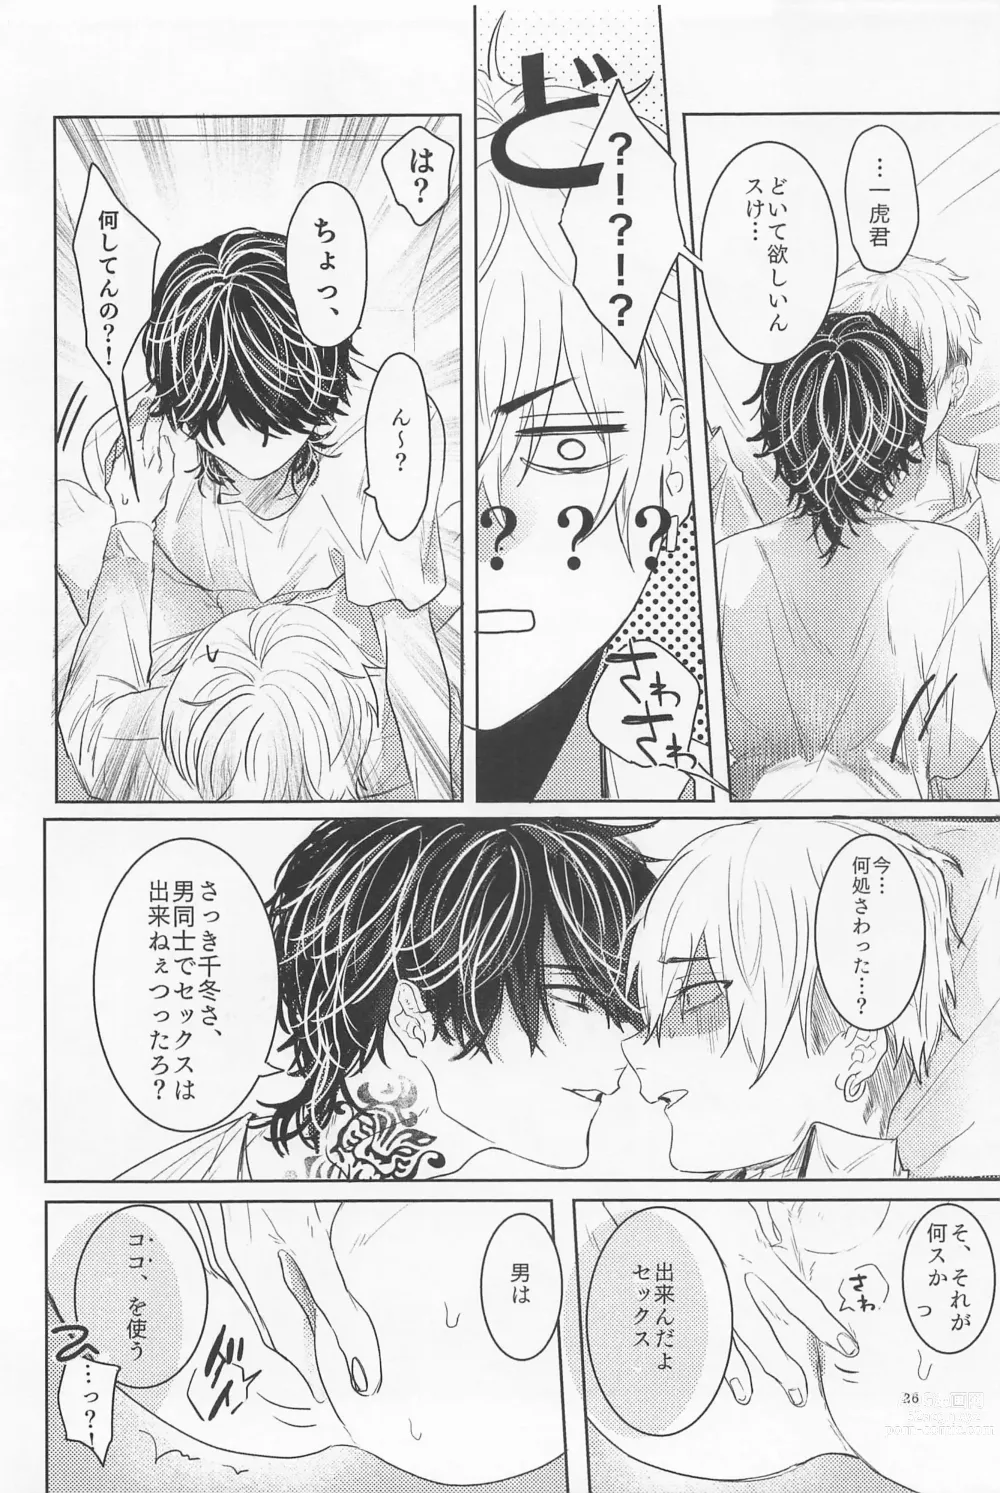 Page 25 of doujinshi Ao to Haru